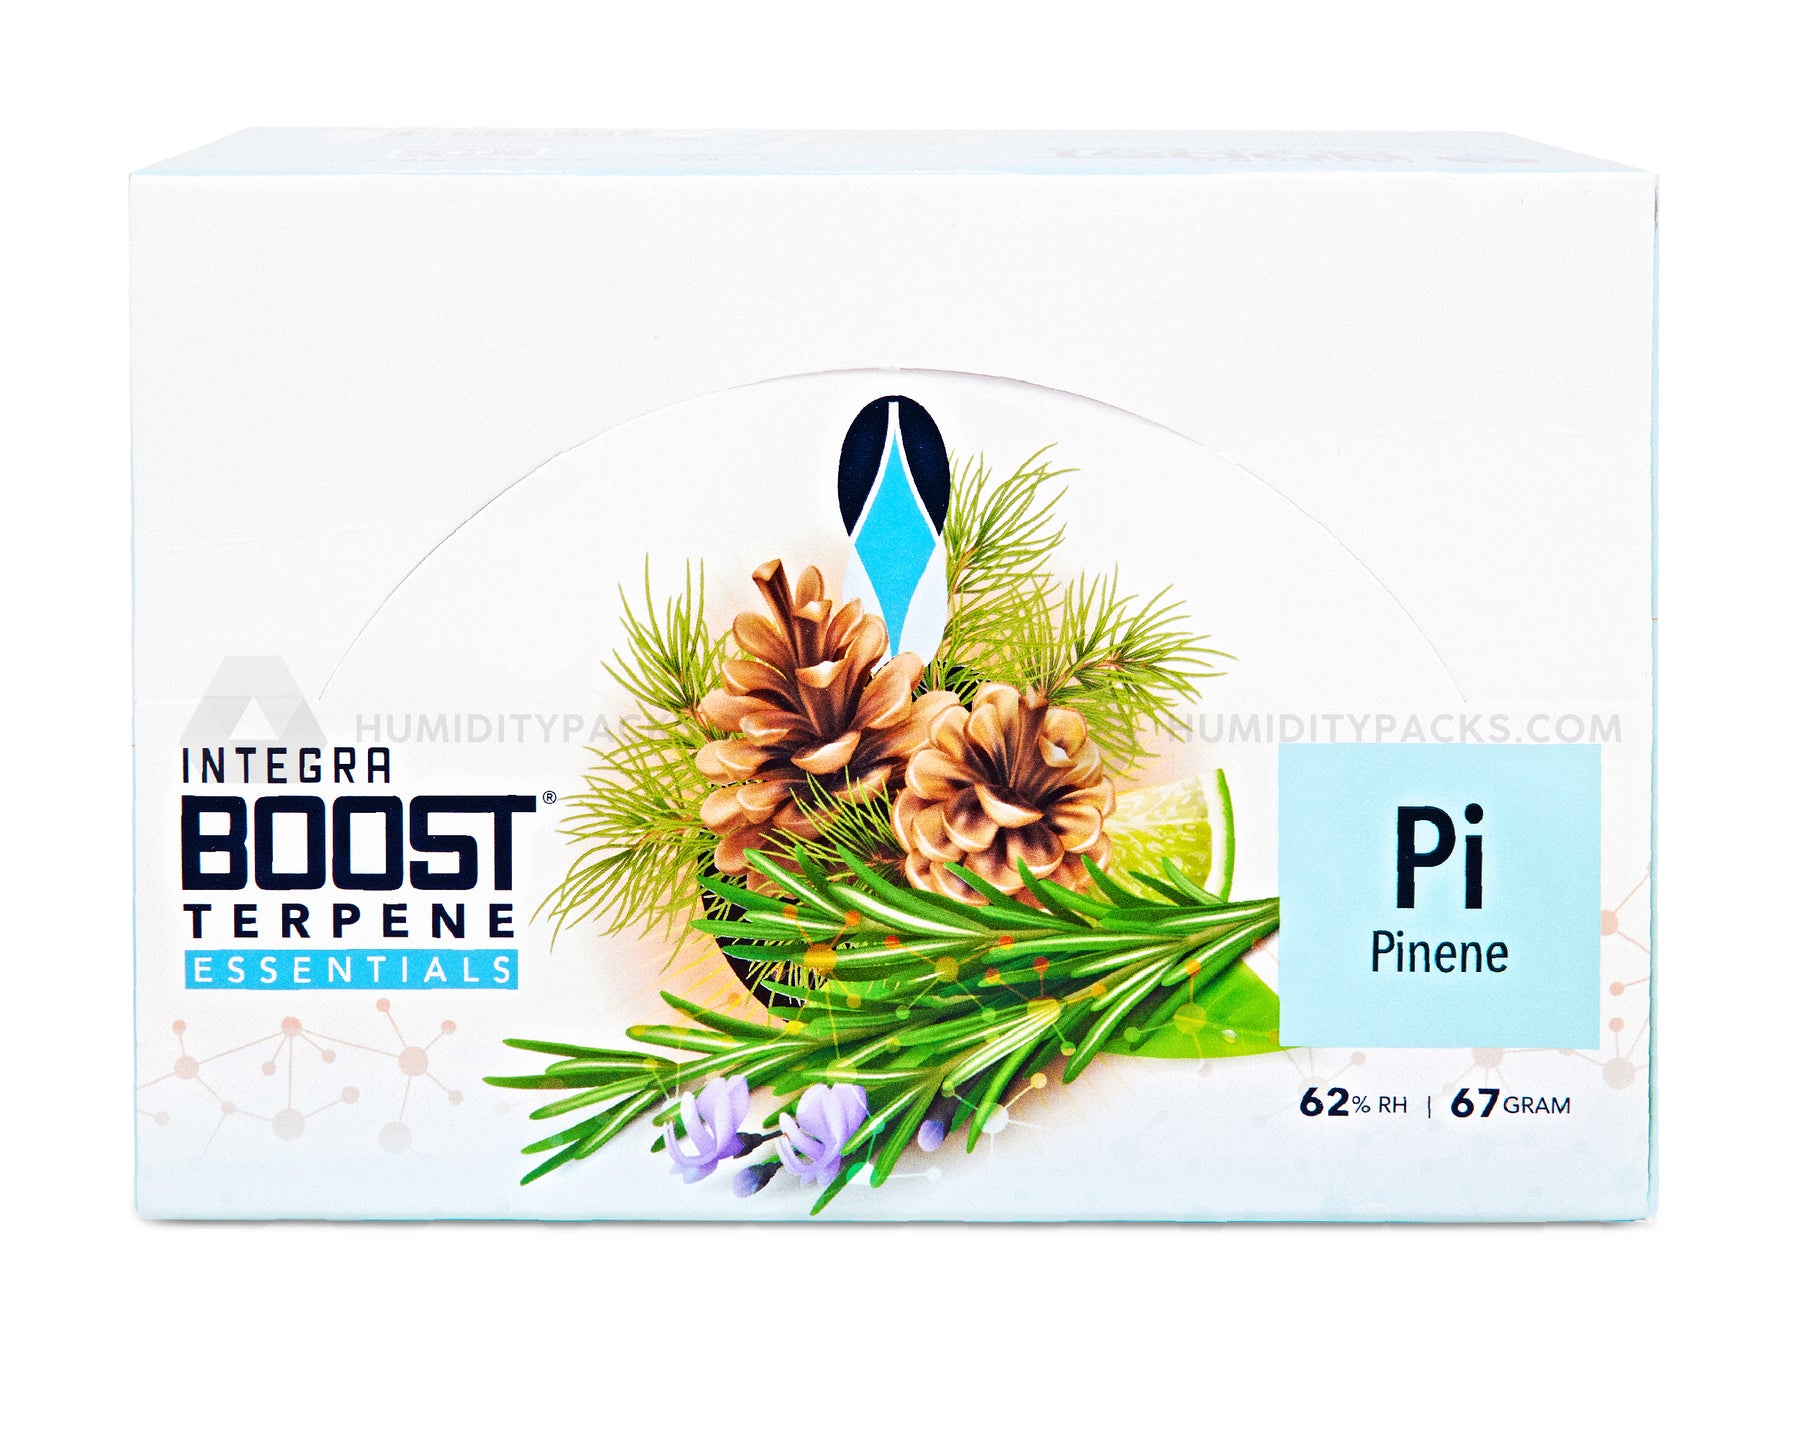 Integra Boost 67 Gram 2-Way Terpene Essentials Pinene Humidity Packs (62%) 12-Box Humidity Packs - 6